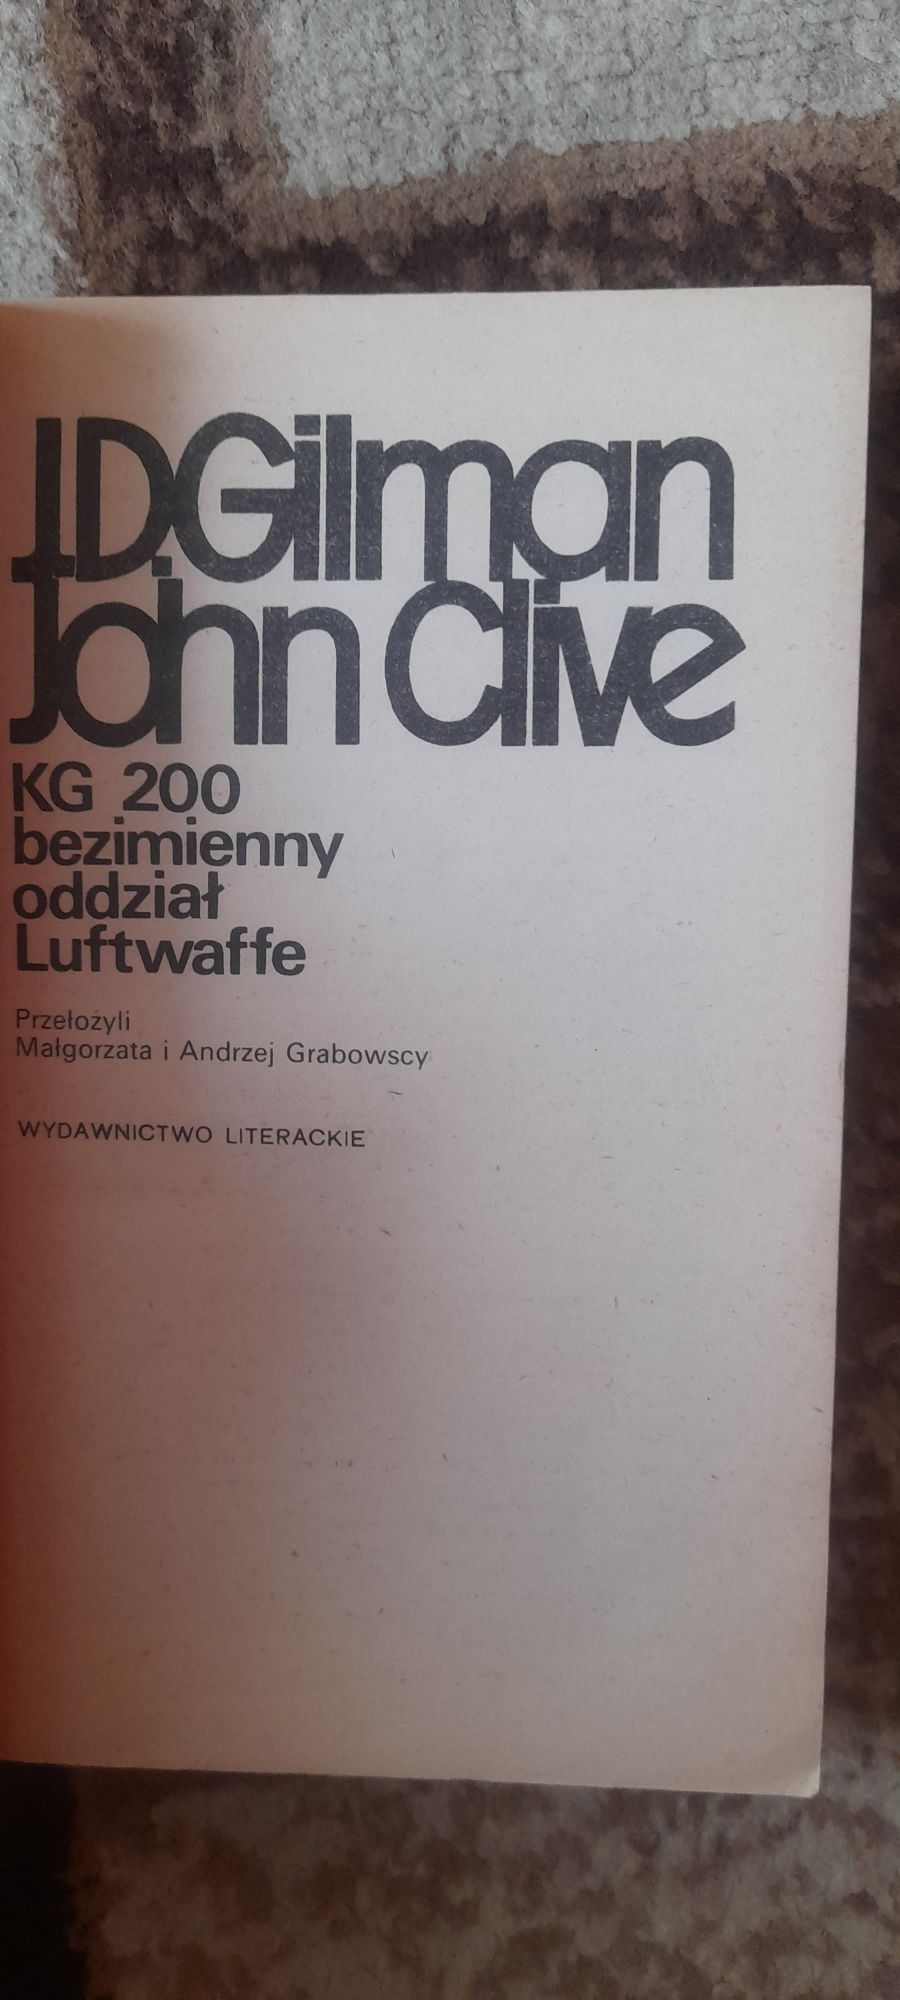 KG 200 bezimienny oddział luftwaffe- J.D.Gilman John Clive wyd II 1990